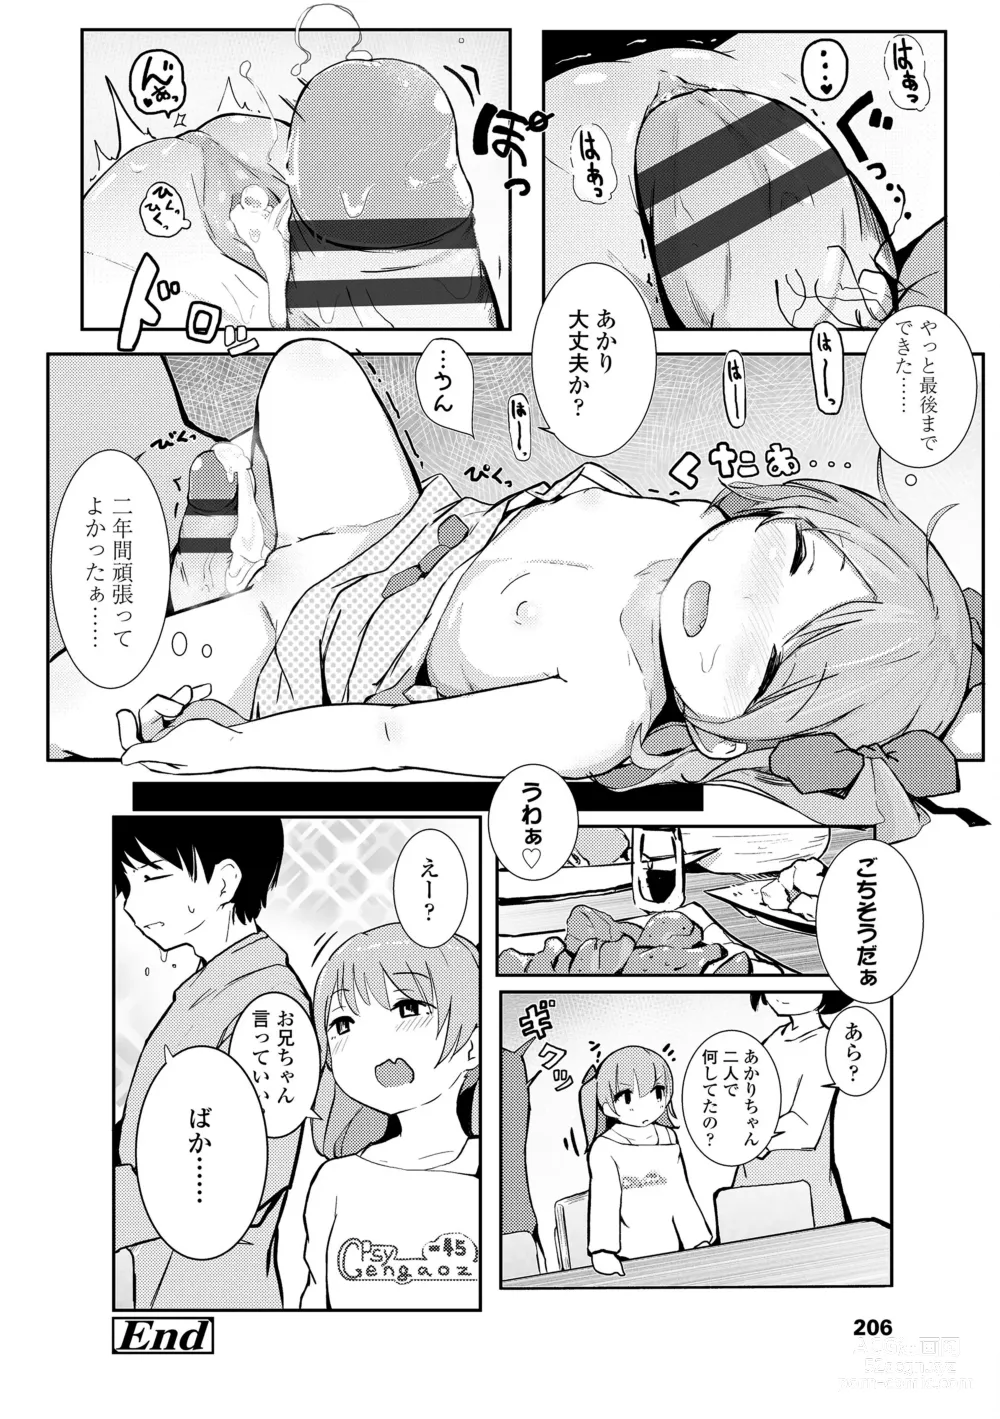 Page 208 of manga Chiisana Karada no Dakigokochi